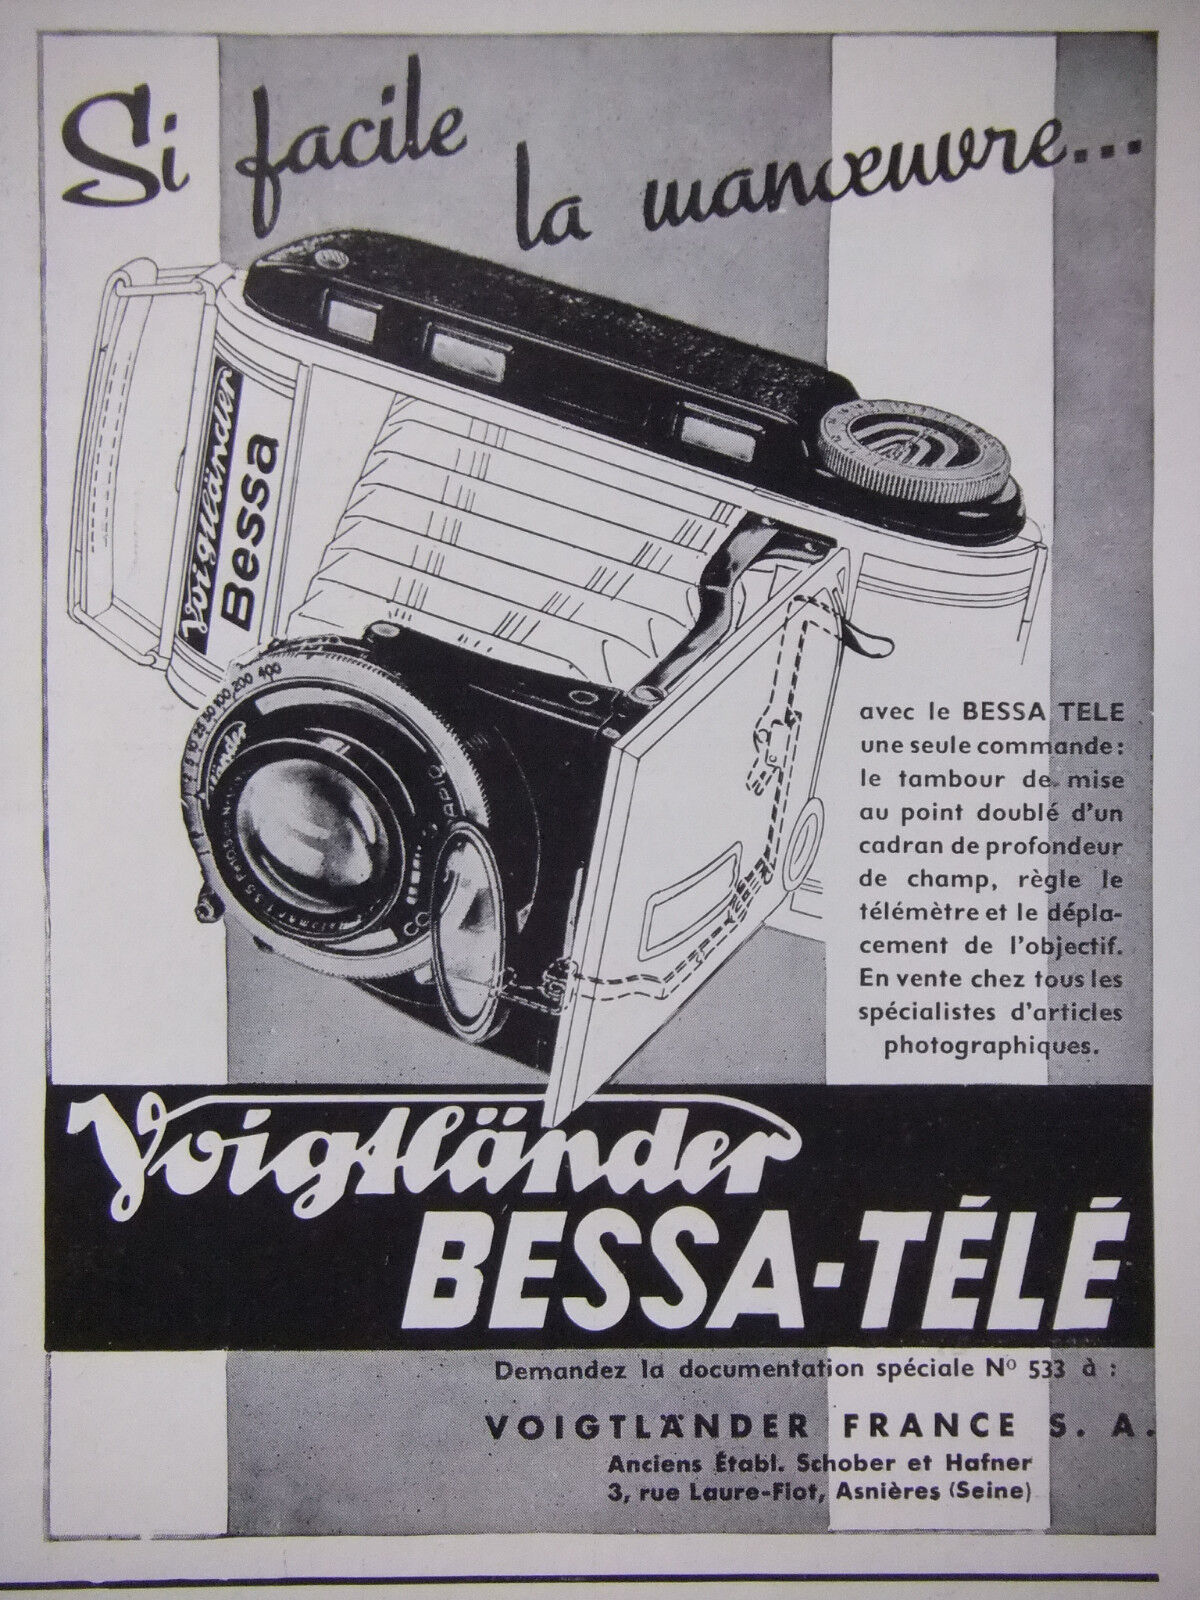 1939 VOIGTLANDER BESSA TV PRESS ADVERTISEMENT - ADVERTISING